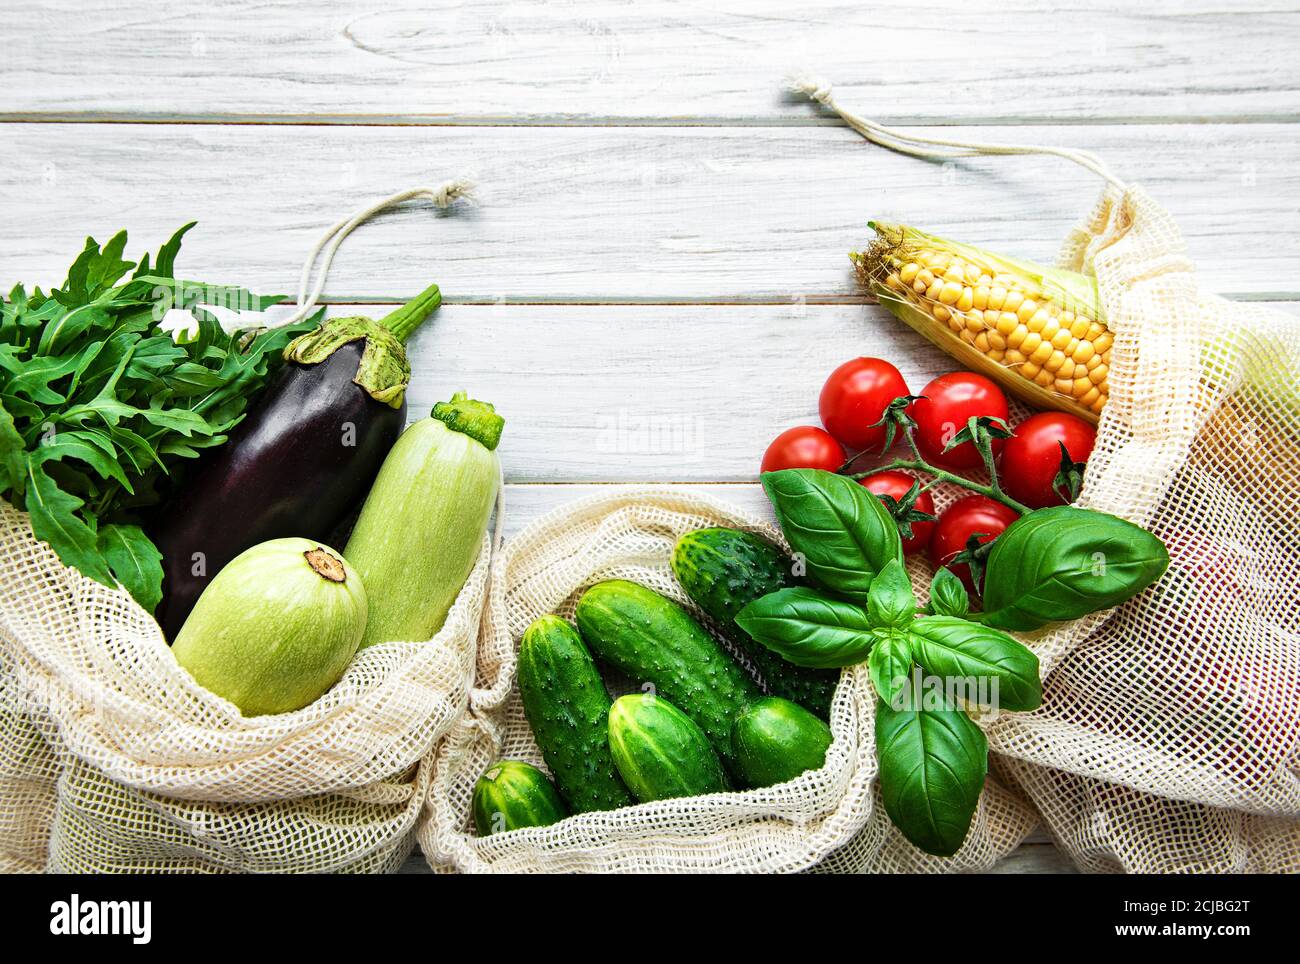 Verduras frescas en bolsas de algodón ecológico en la mesa de la cocina. Verduras frescas del mercado. Concepto de compras sin residuos. Foto de stock